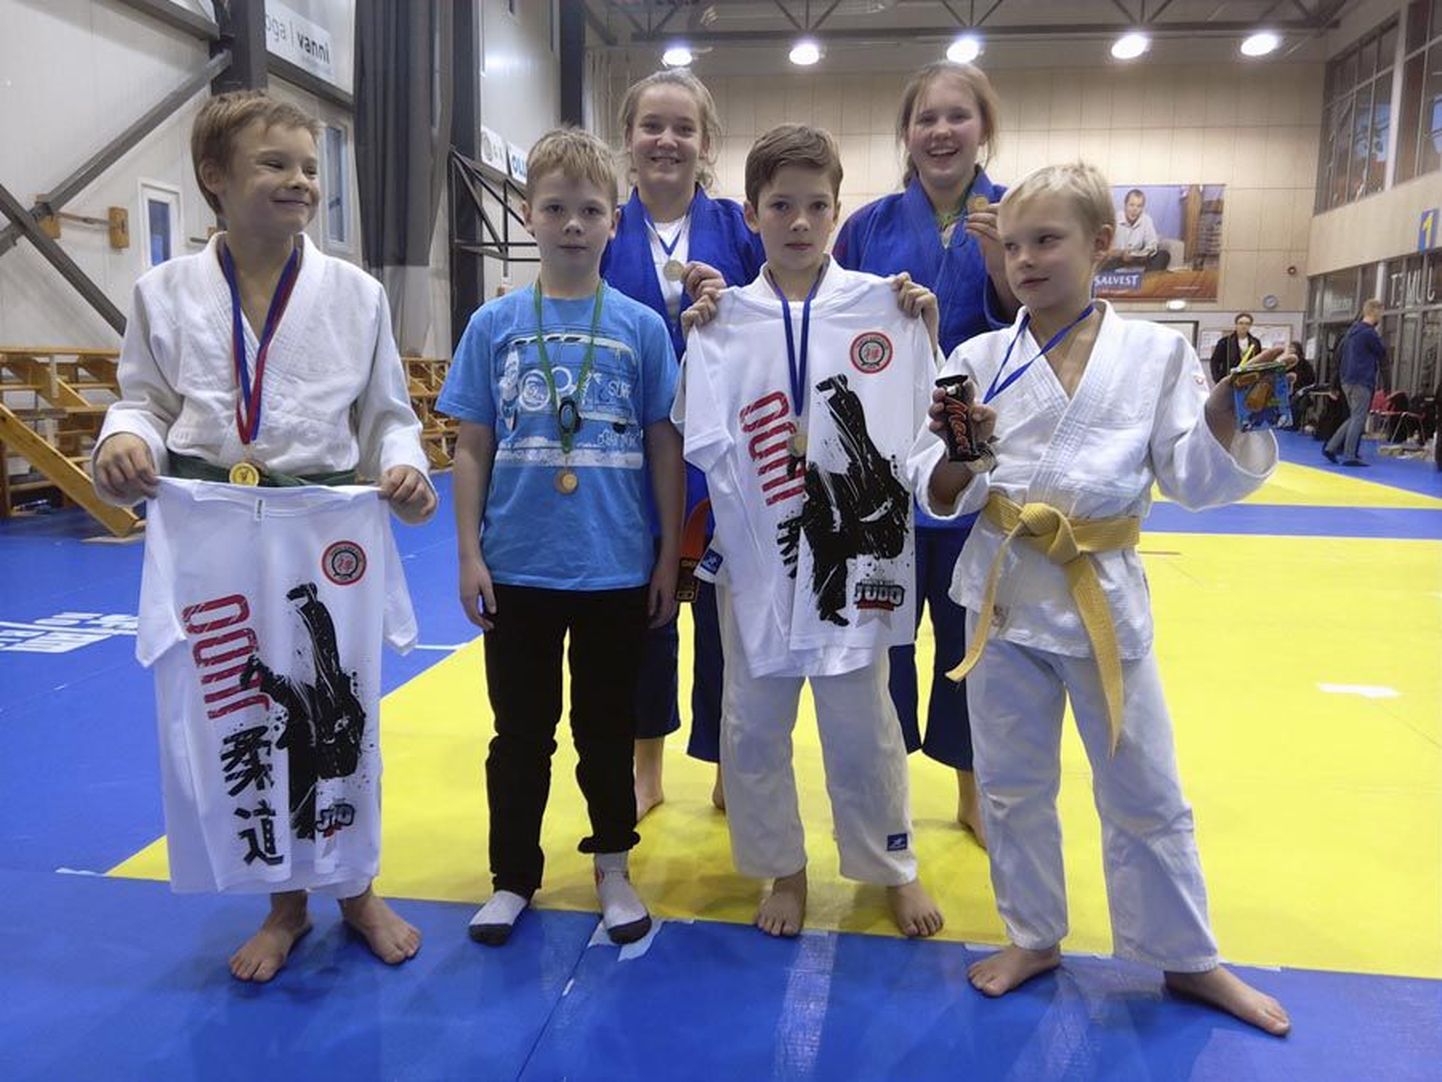 Turniiril medali võitnud Geron Vidder (vasakul), Siim Luide, Laura Silde, Jan-Kristjan Tamm, Eliisabet Veermets ja Kenert Vidder. Pildilt on puudu omas kaalus võitnud Rainer Õnne.